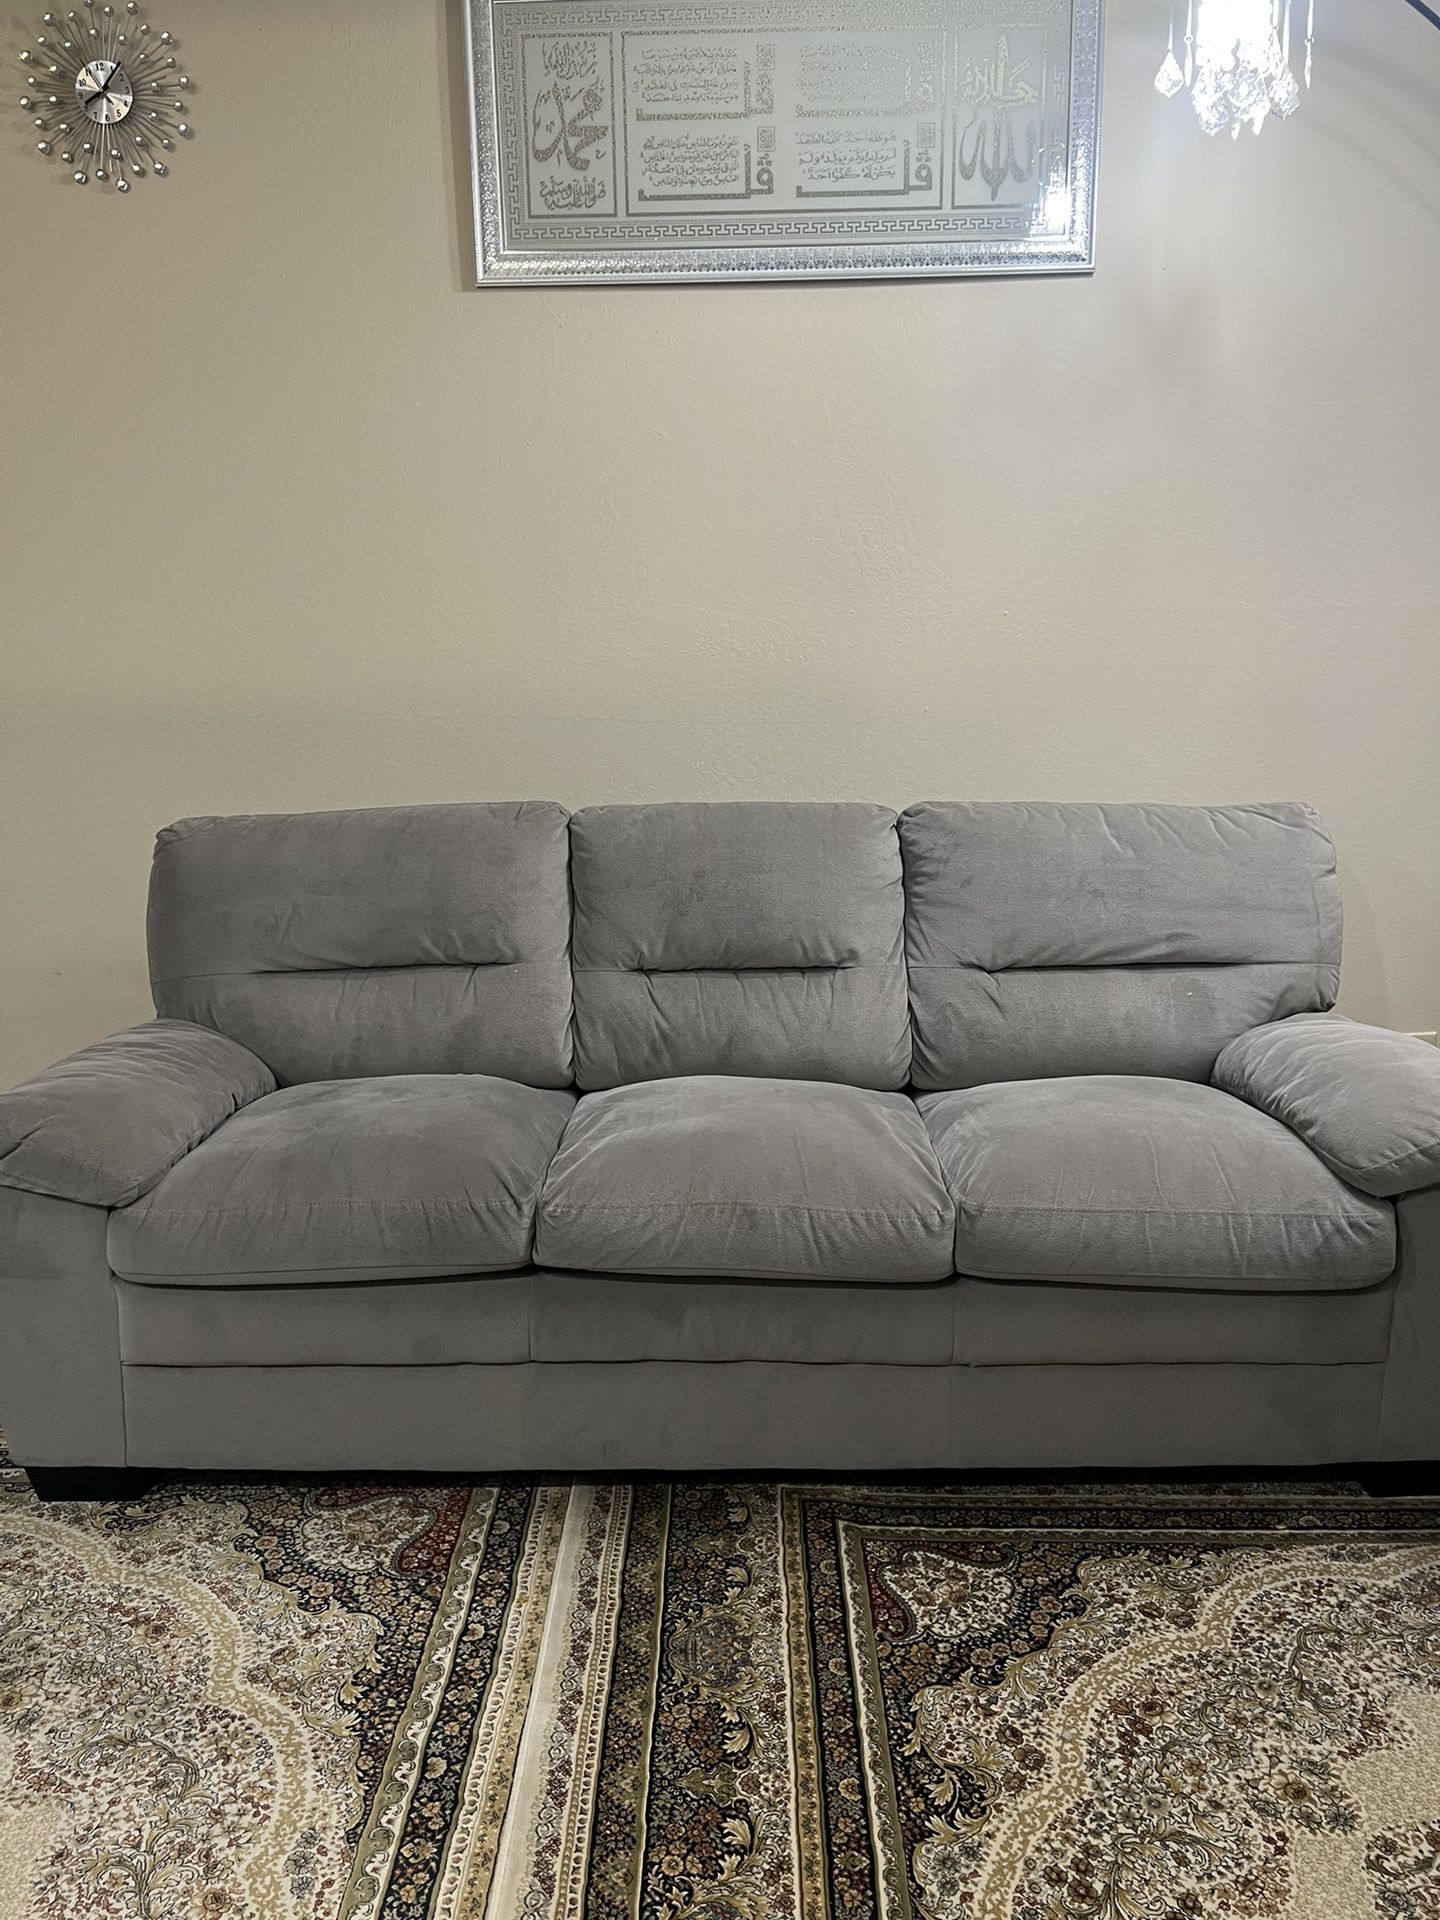 2 Piece Sofa Set 